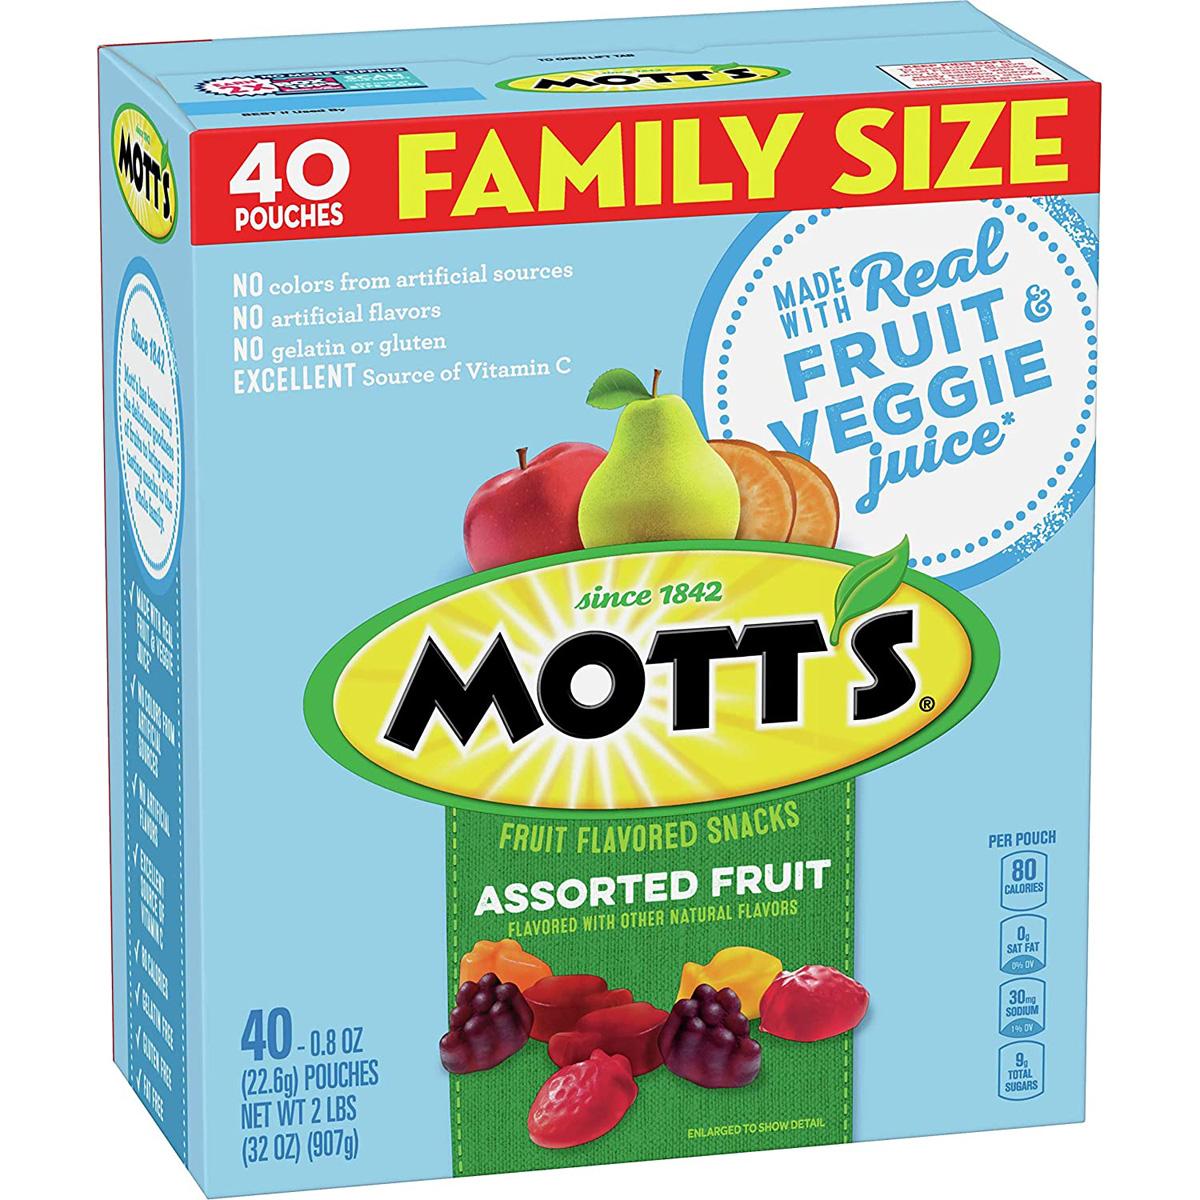 40 Motts Medleys Fruit Snacks for $3.99 Shipped